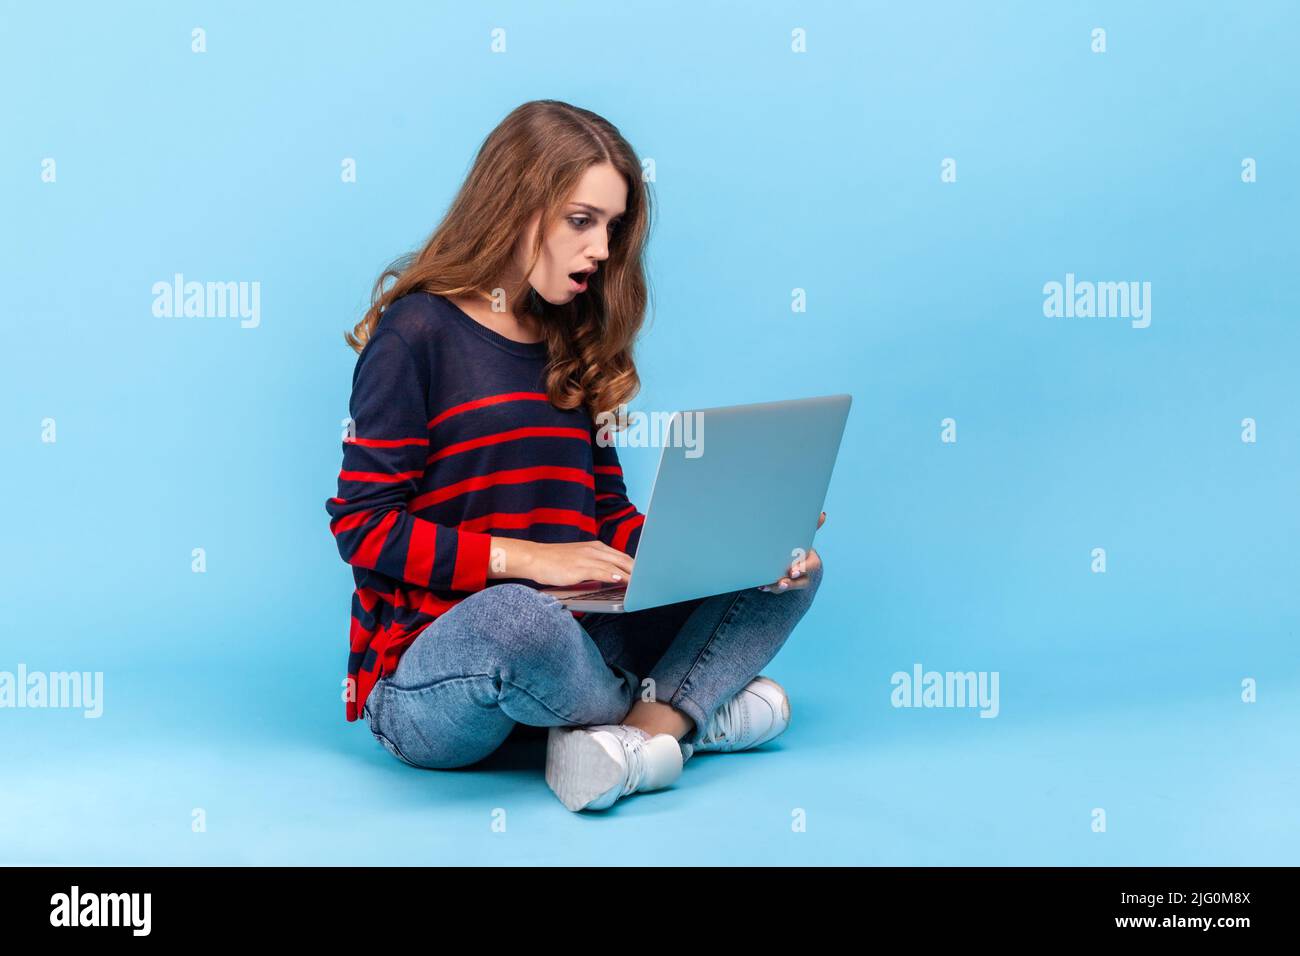 Eine überraschte Frau, die einen gestreiften Pullover im lässigen Stil trägt, auf dem Boden mit gekreuzten Beinen sitzt und mit schockierter Ausstrahlung auf den Laptop-Bildschirm blickt. Innenaufnahme des Studios isoliert auf blauem Hintergrund. Stockfoto